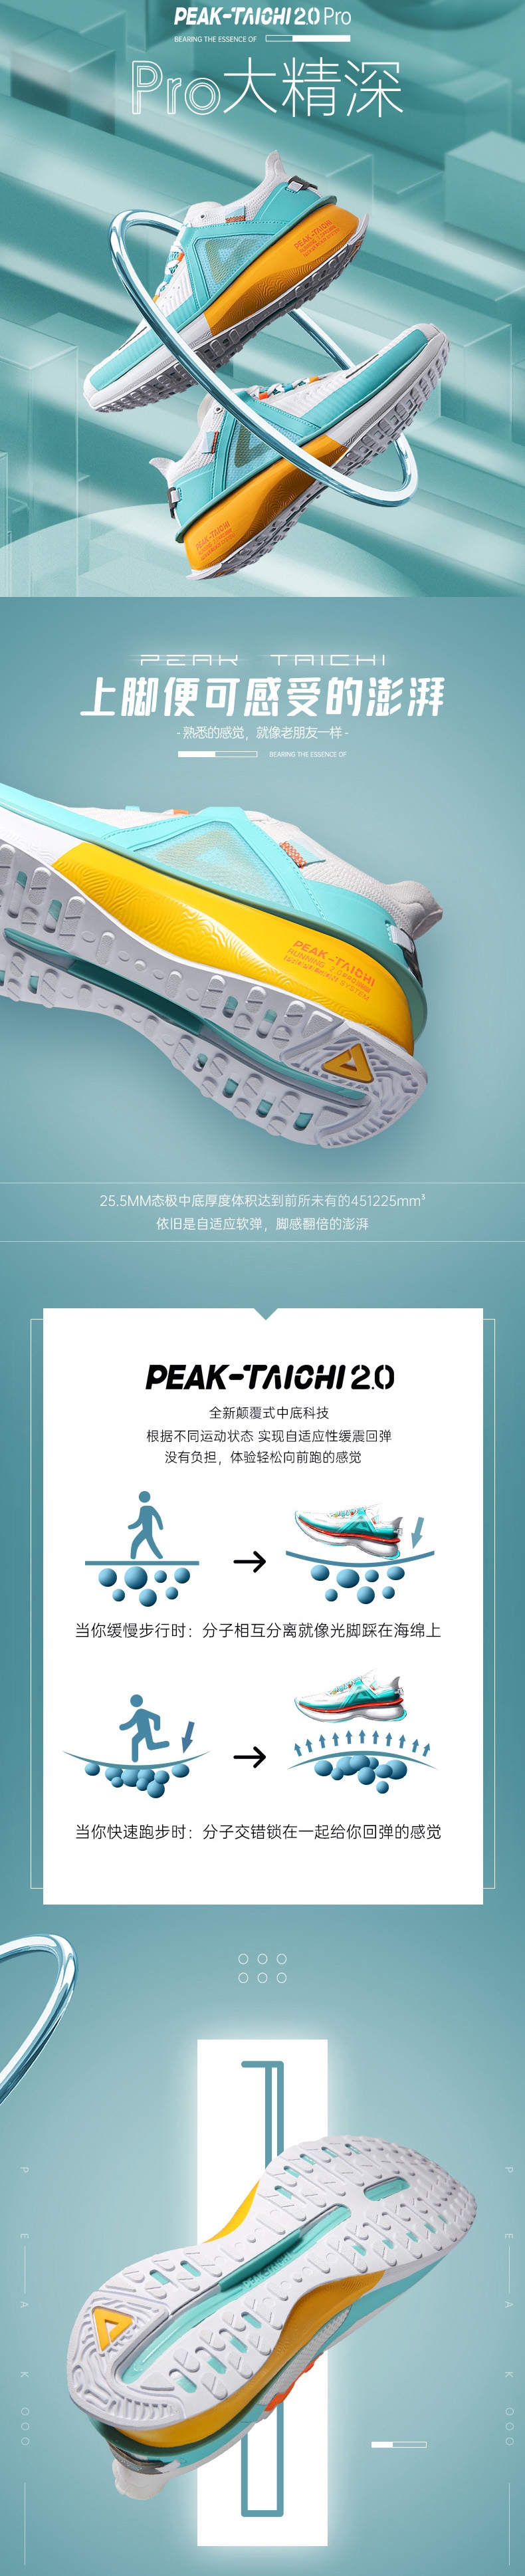 PEAK 2020 PEAK-"TAICHI" 2.0 Pro Smart Running Shoes